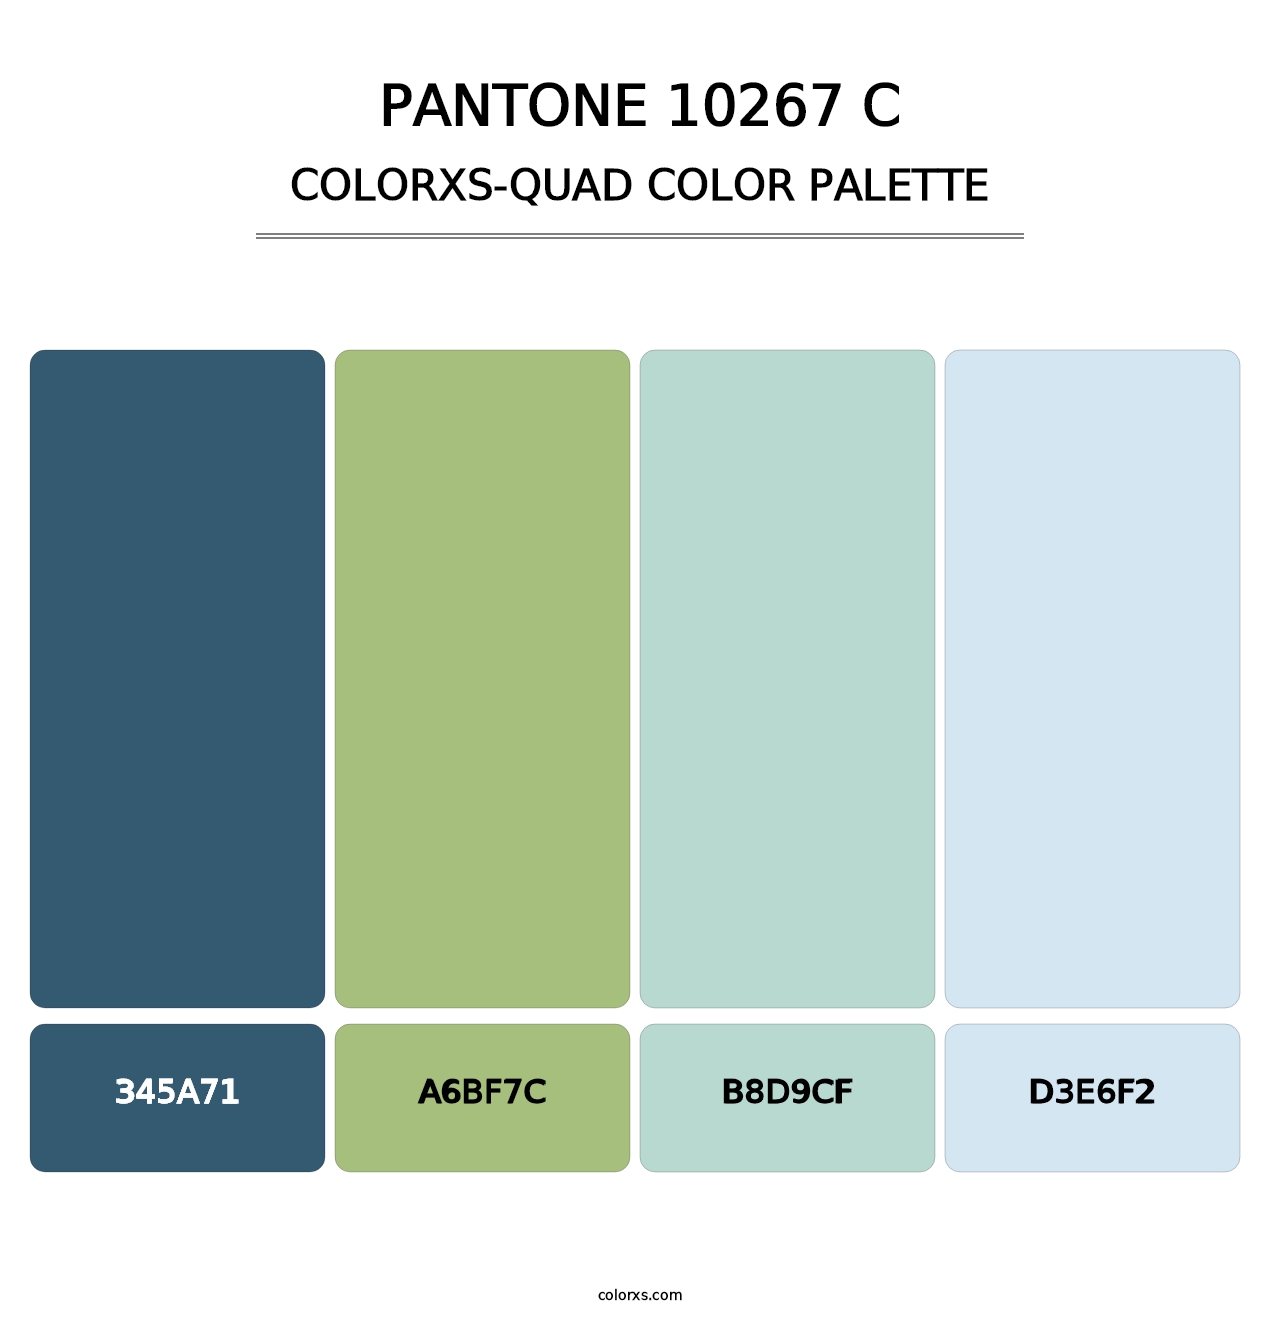 PANTONE 10267 C - Colorxs Quad Palette